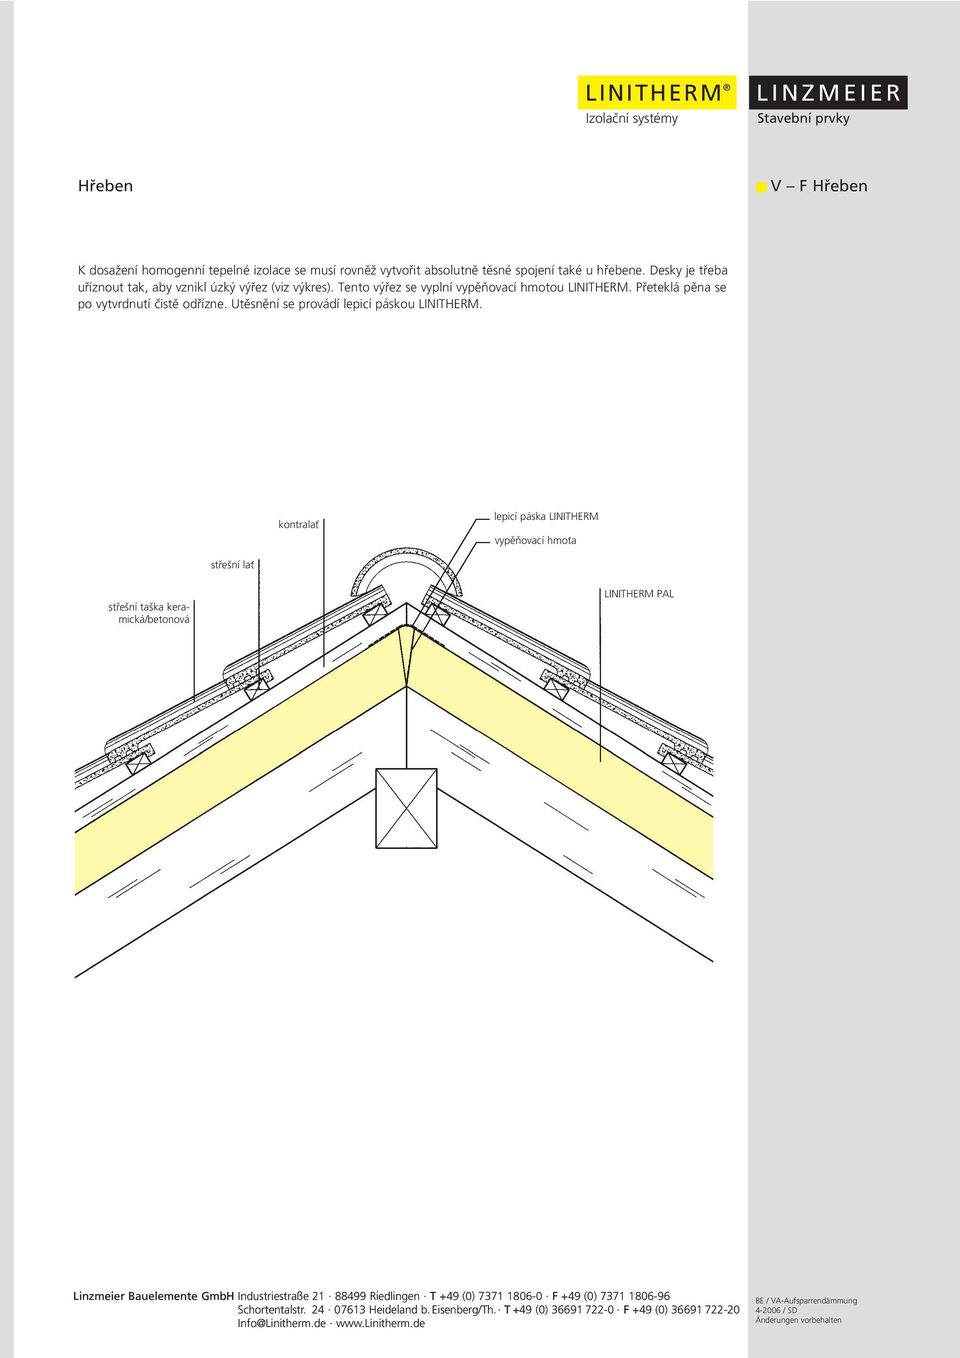 Všeobecné návody a pokyny pro pokládku tepelně izolačního systému LINITHERM  na krokve - PDF Stažení zdarma